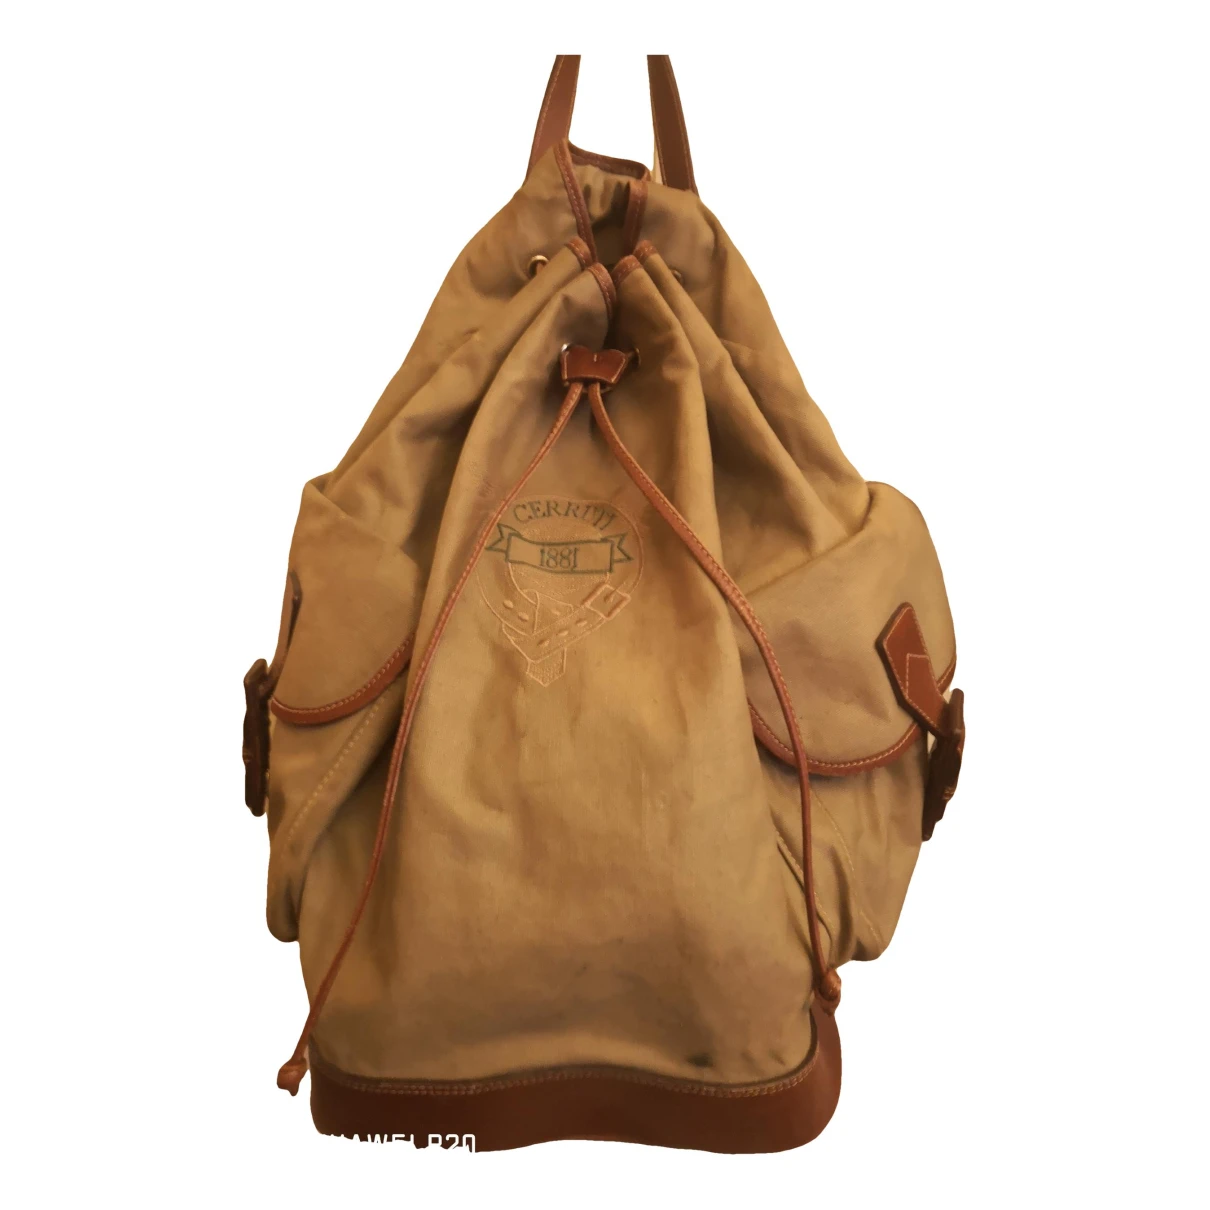 Pre-owned Cerruti 1881 Cloth Backpack In Beige